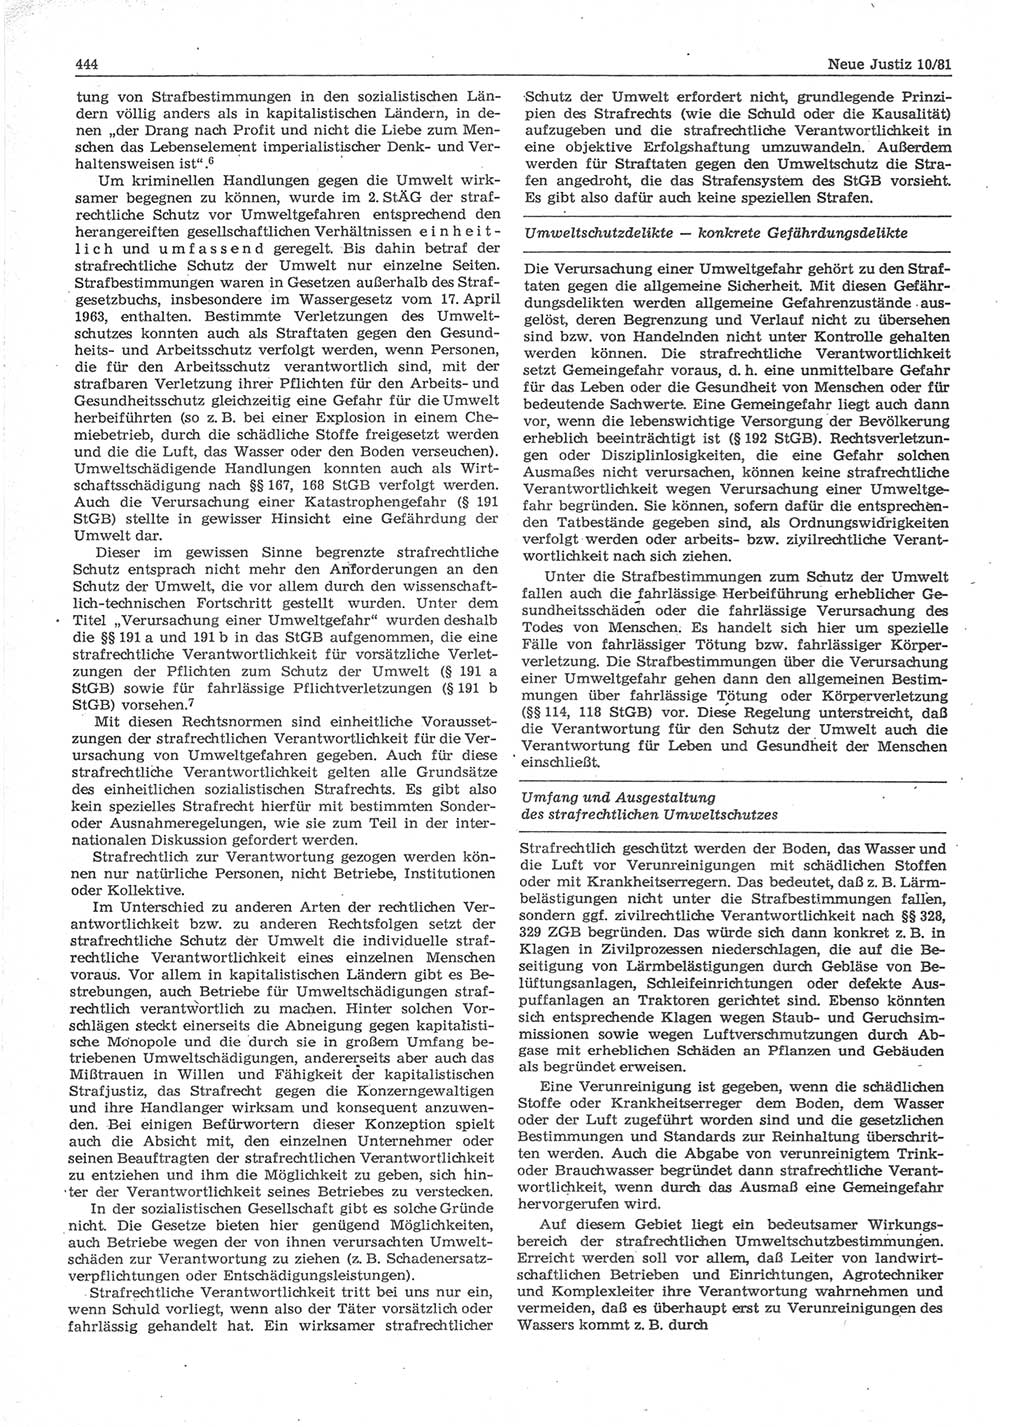 Neue Justiz (NJ), Zeitschrift für sozialistisches Recht und Gesetzlichkeit [Deutsche Demokratische Republik (DDR)], 35. Jahrgang 1981, Seite 444 (NJ DDR 1981, S. 444)